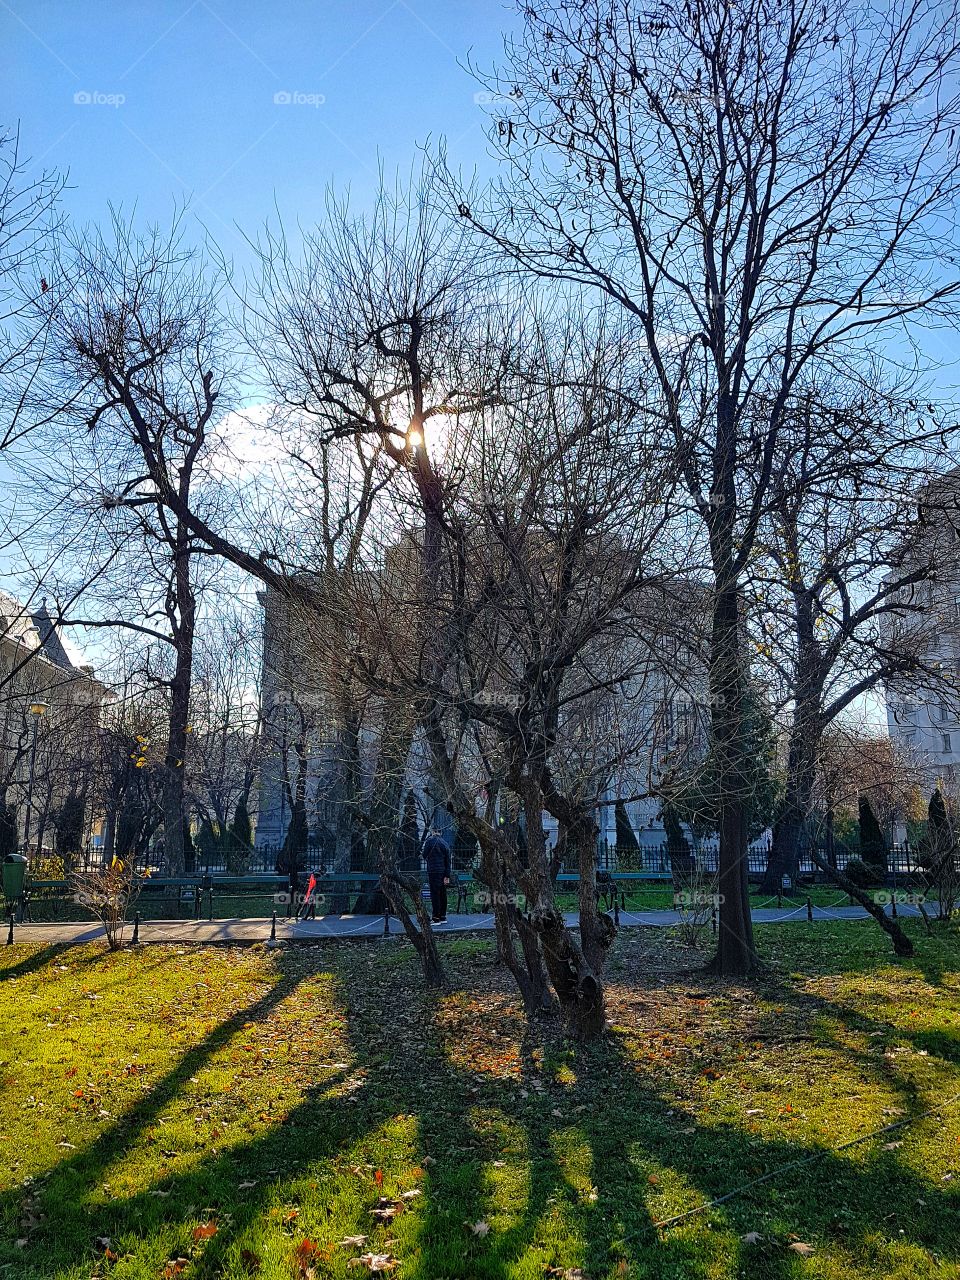 Cismigiu Park in Bucharest